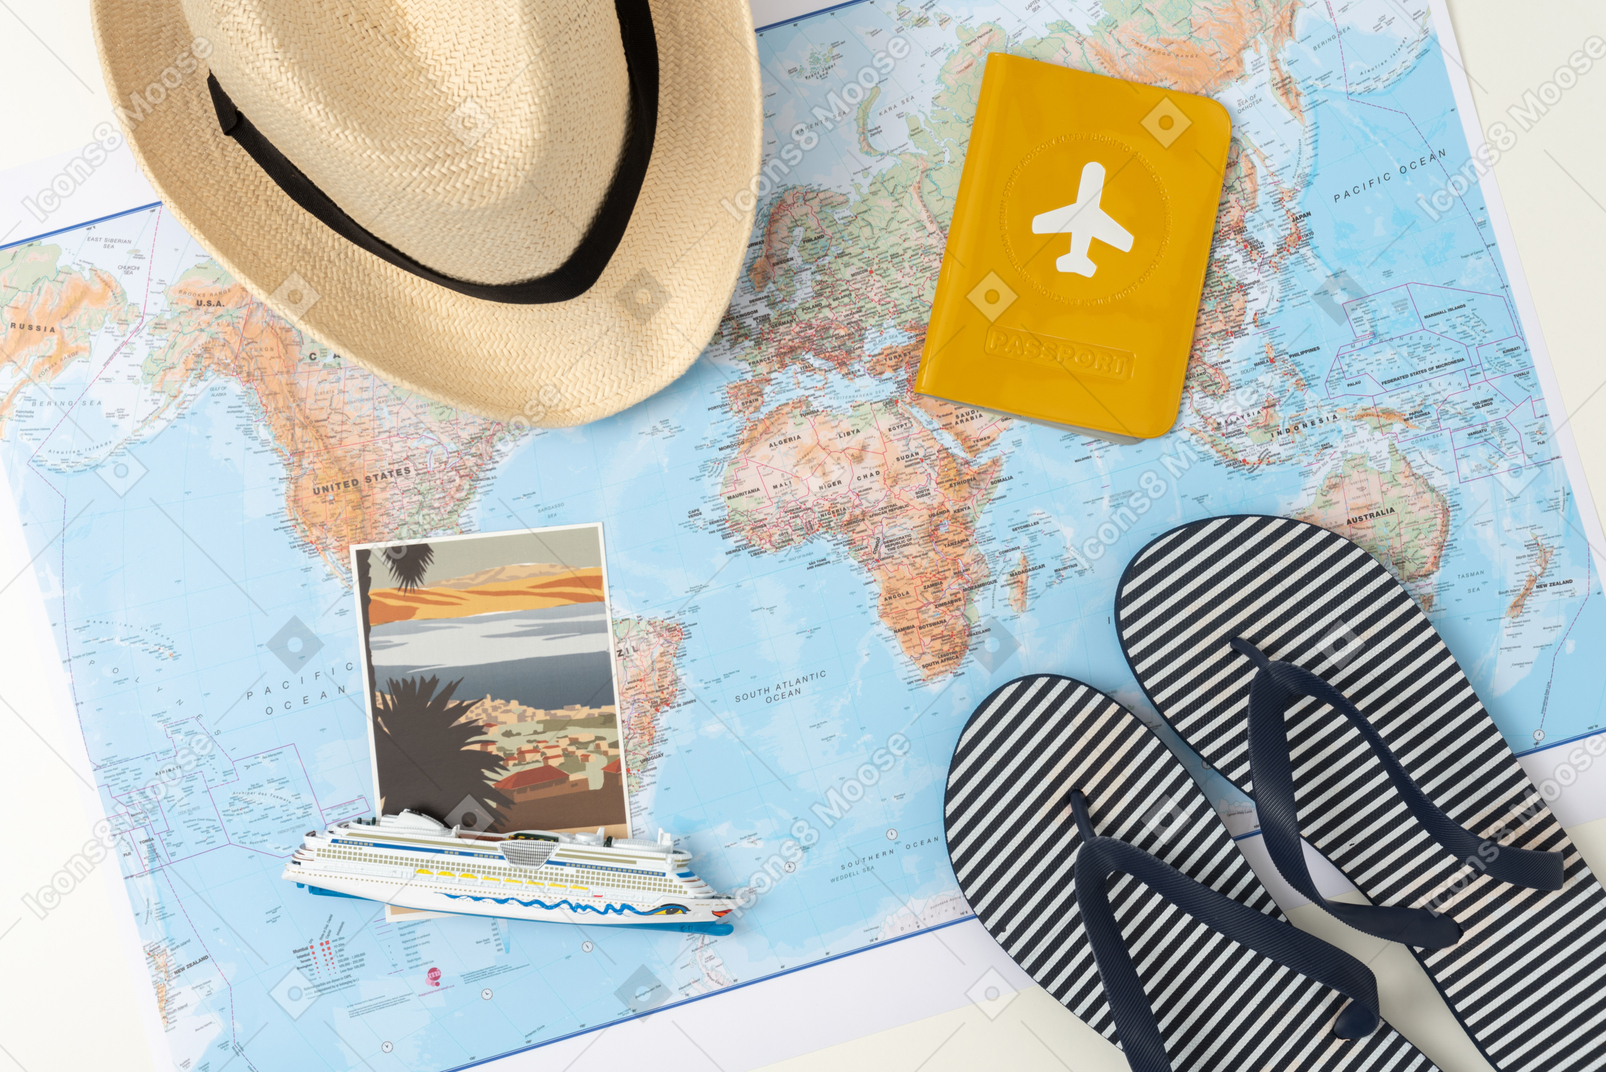 Un cappello di paglia e delle infradito, insieme a un passaporto e una foto sul mappamondo